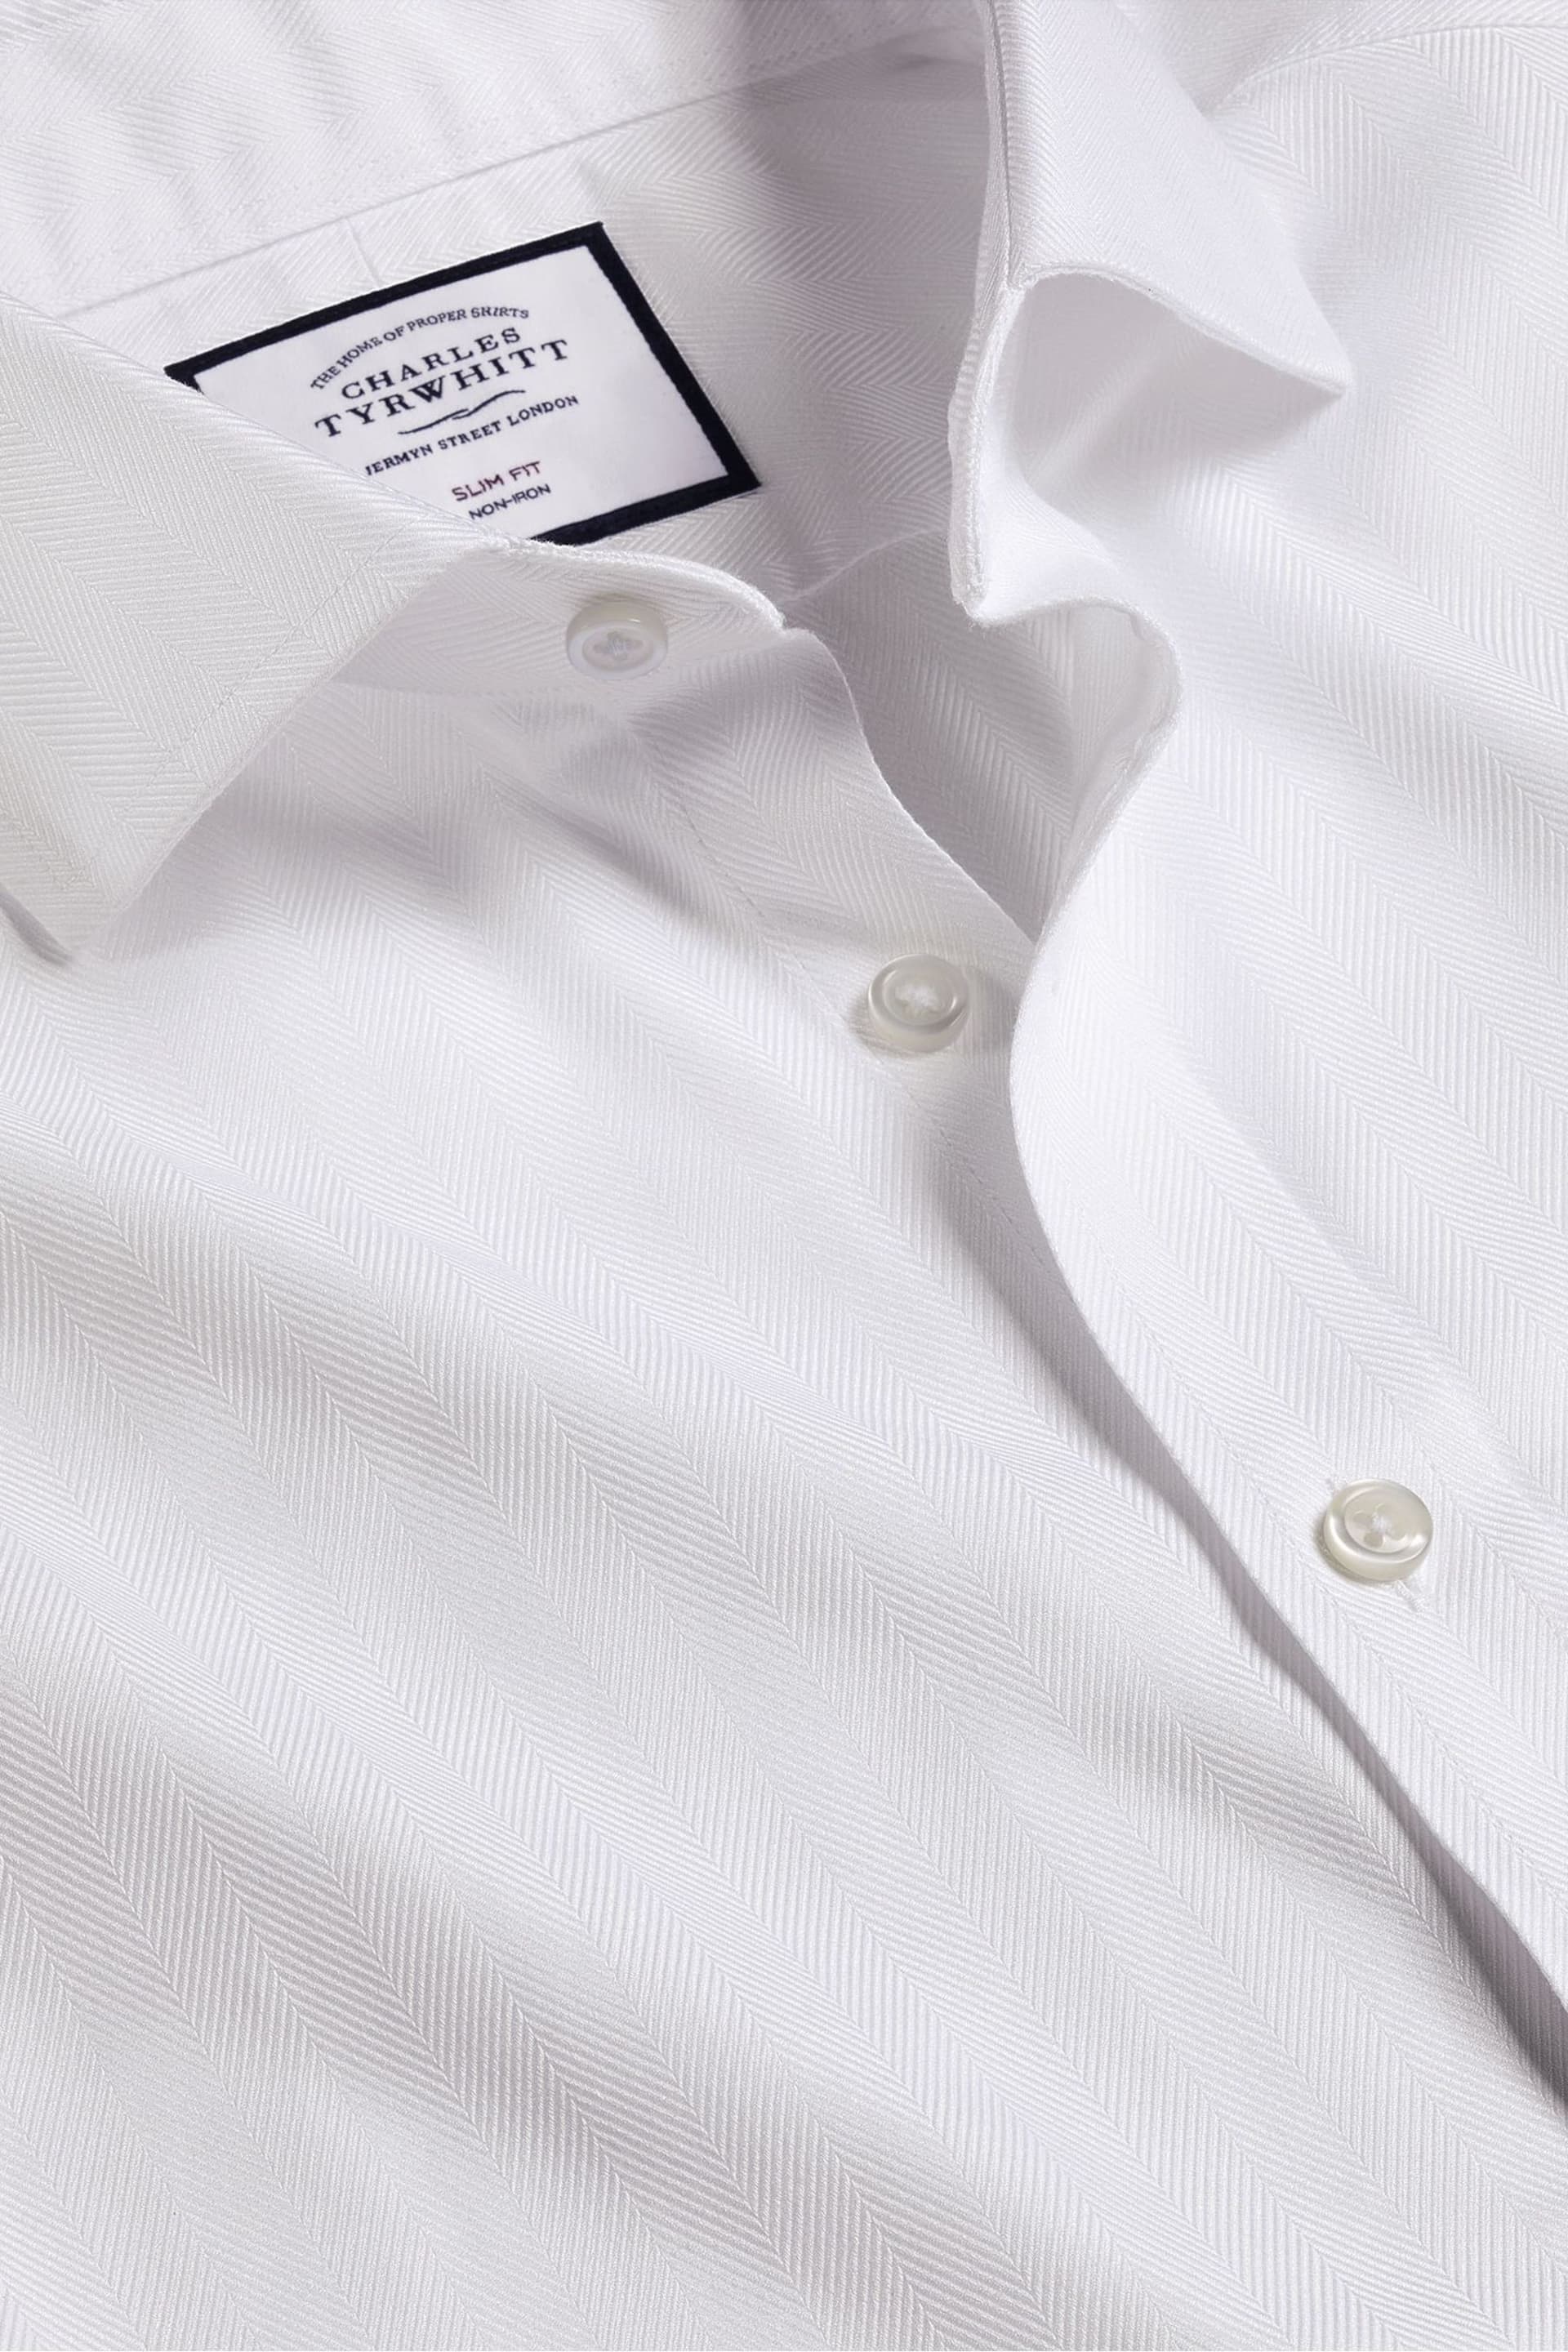 Charles Tyrwhitt White Slim Fit Cutaway Non-iron Herringbone Shirt - Image 4 of 4